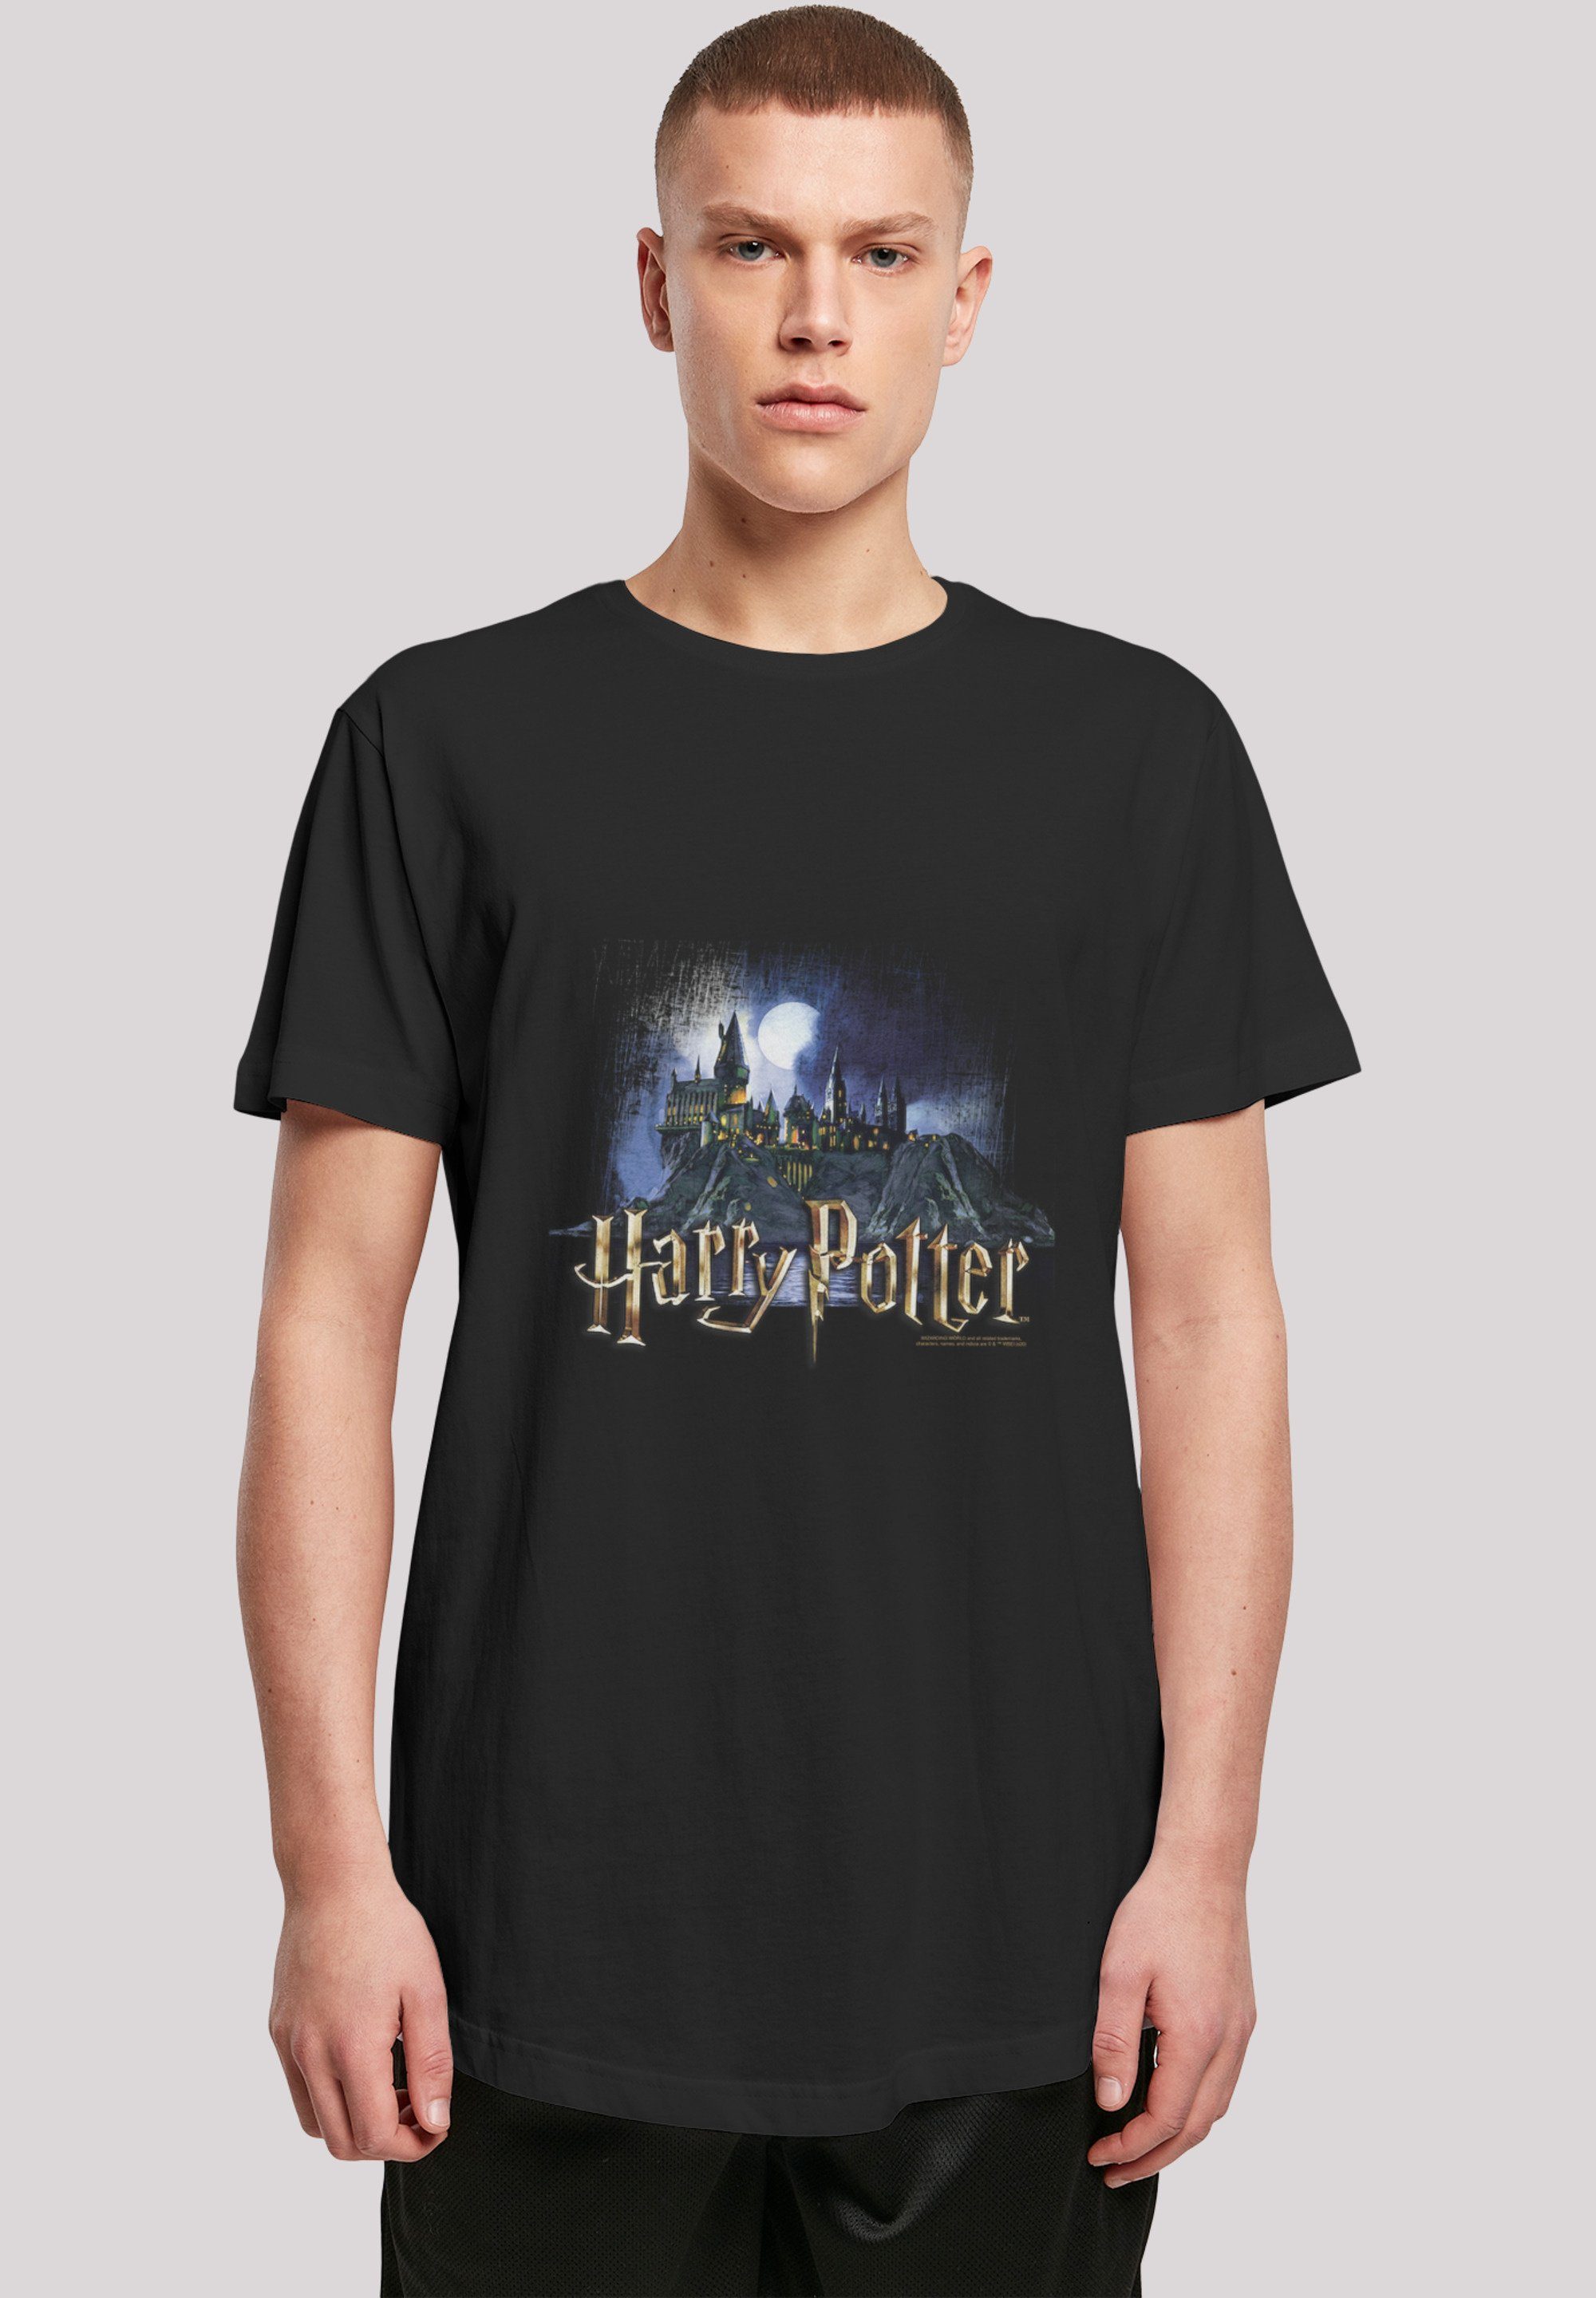 F4NT4STIC T-Shirt Harry Potter Hogwarts Baumwollstoff Sehr weicher Print, Tragekomfort für hohem mit Schule Hexerei Zauberei und Castle